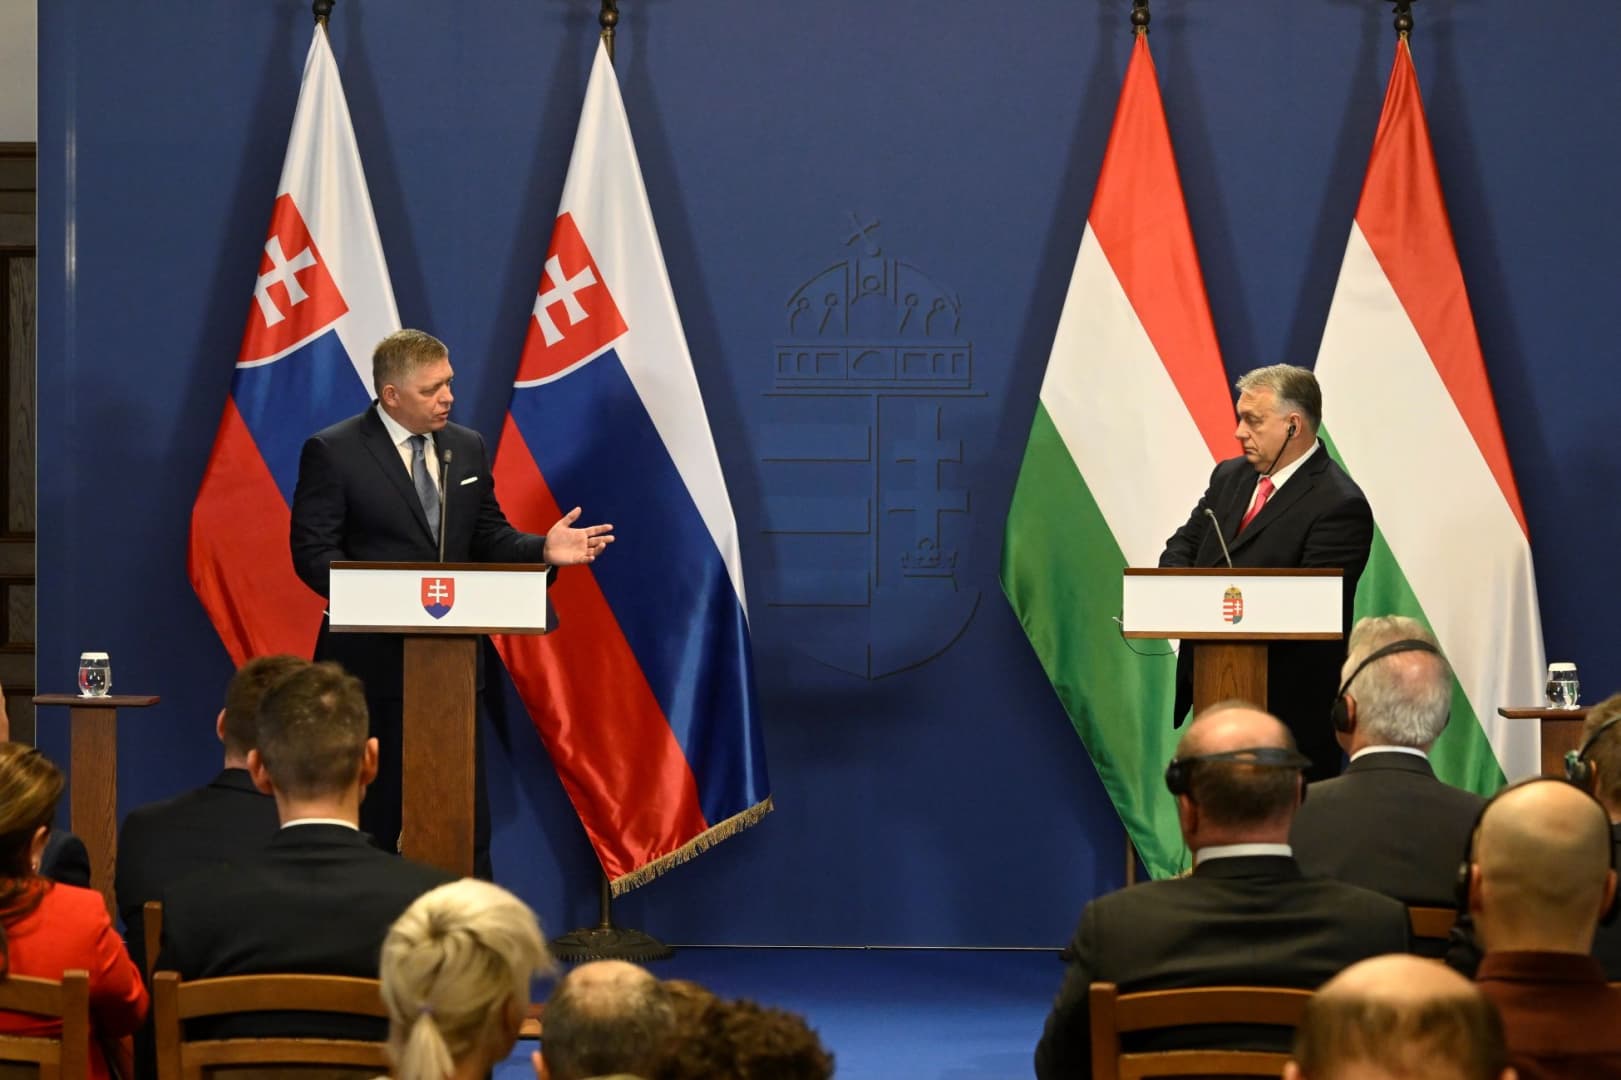 Tökéletes volt az összhang Orbán-Fico találkozón, Fico megvédi Magyarországot az Európai Unióban